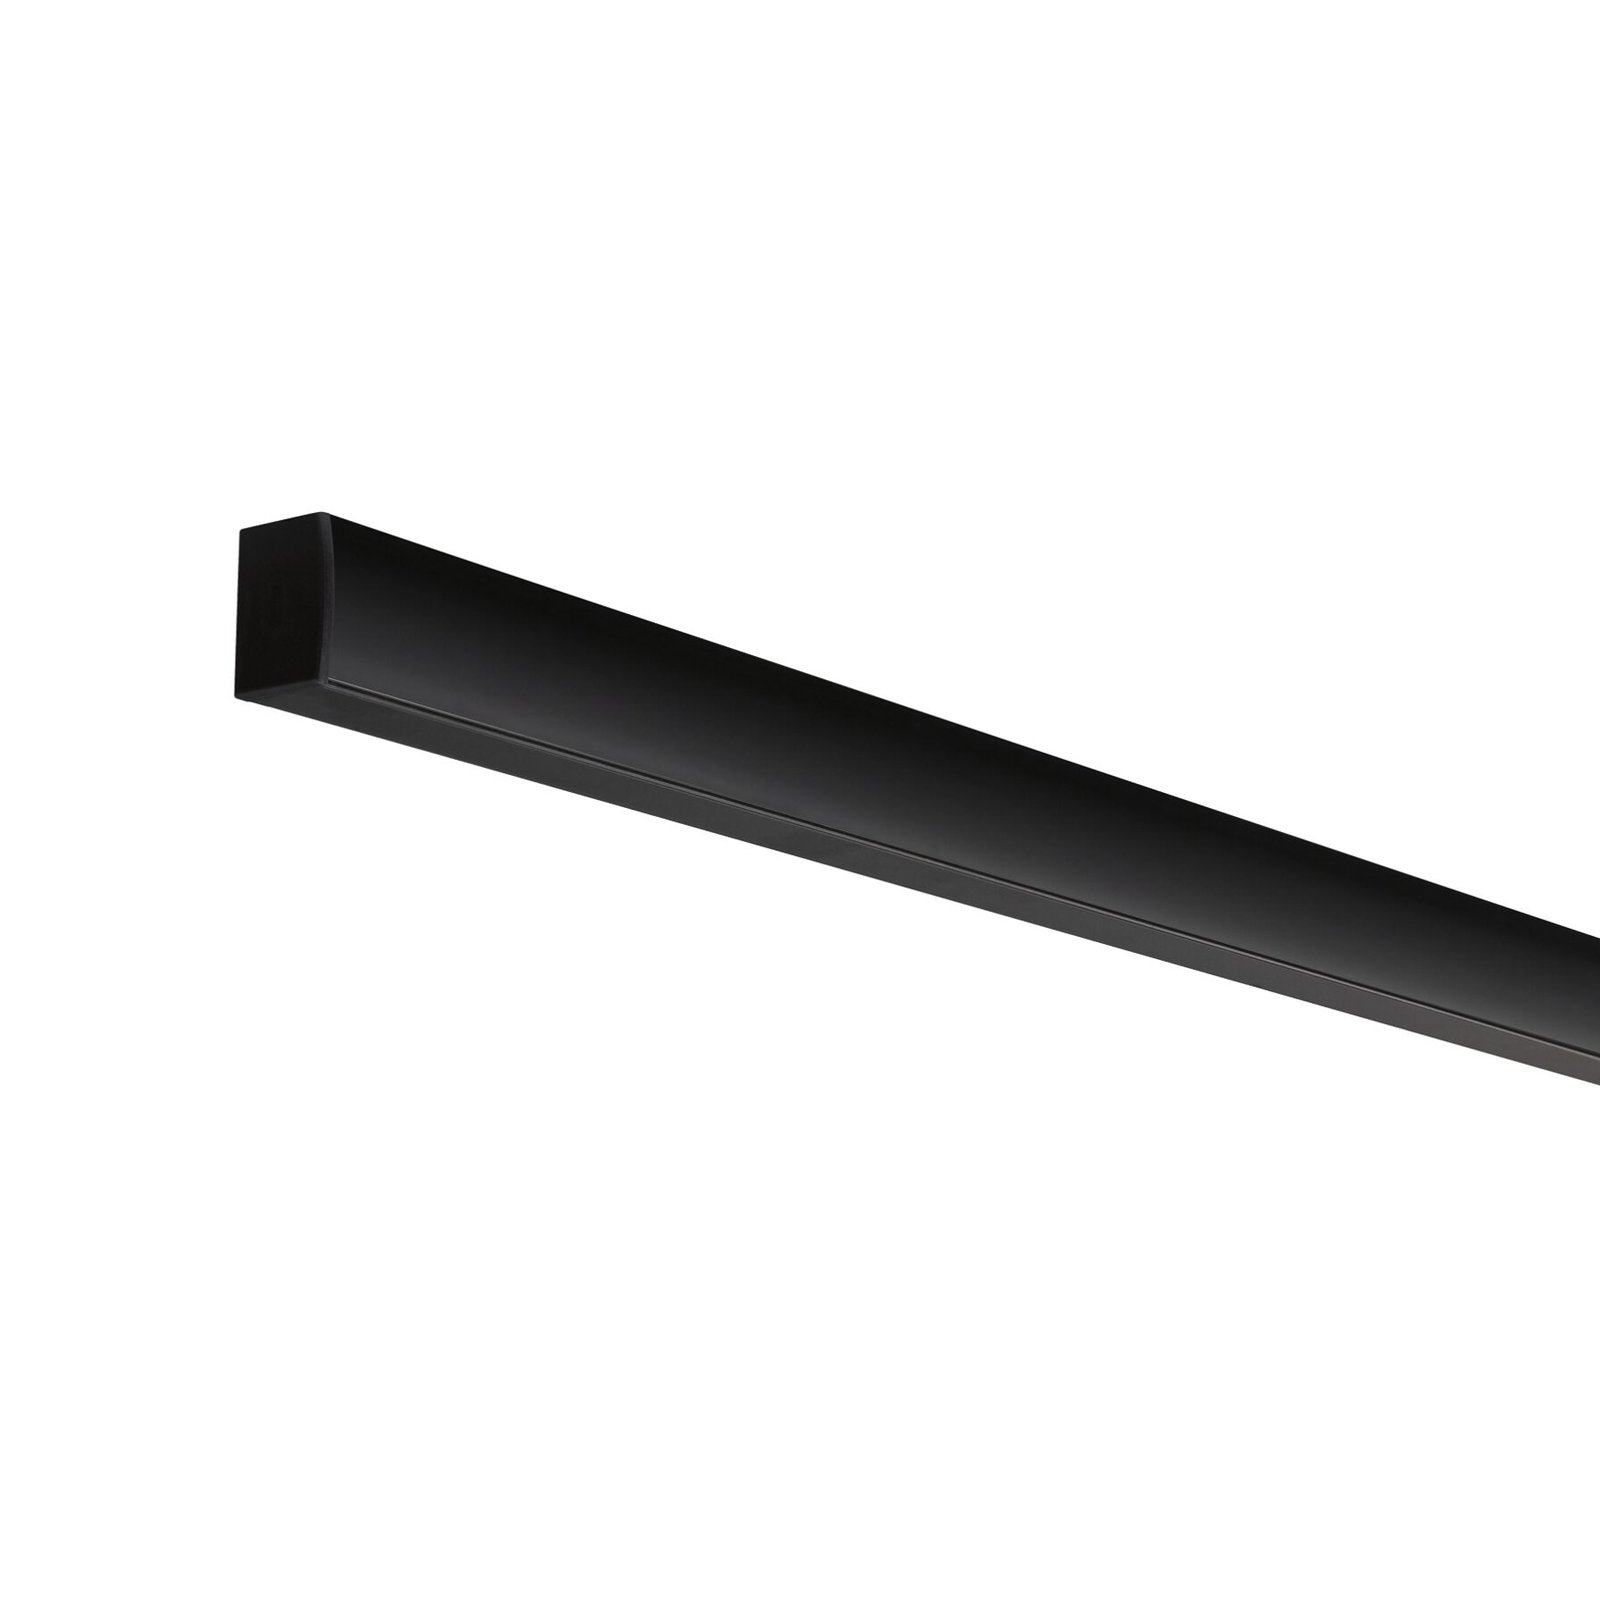 Paulmann Square profil svart diffusor svart 2 m